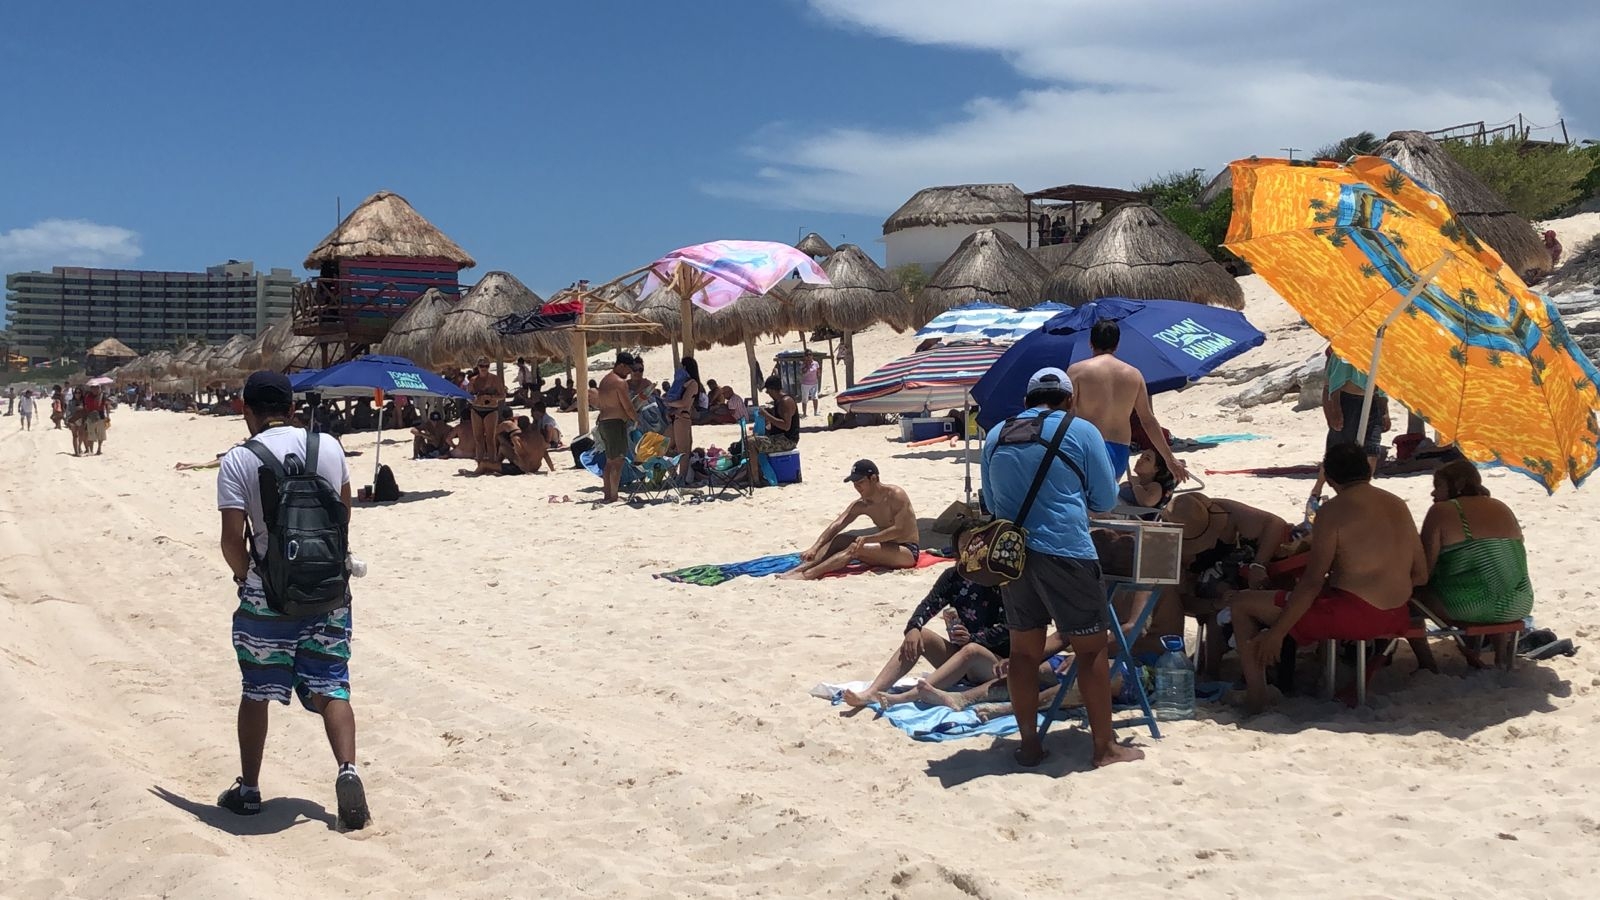 Con sombreros y sombrillas, bañistas disfrutan de un domingo familiar en Playa Delfines